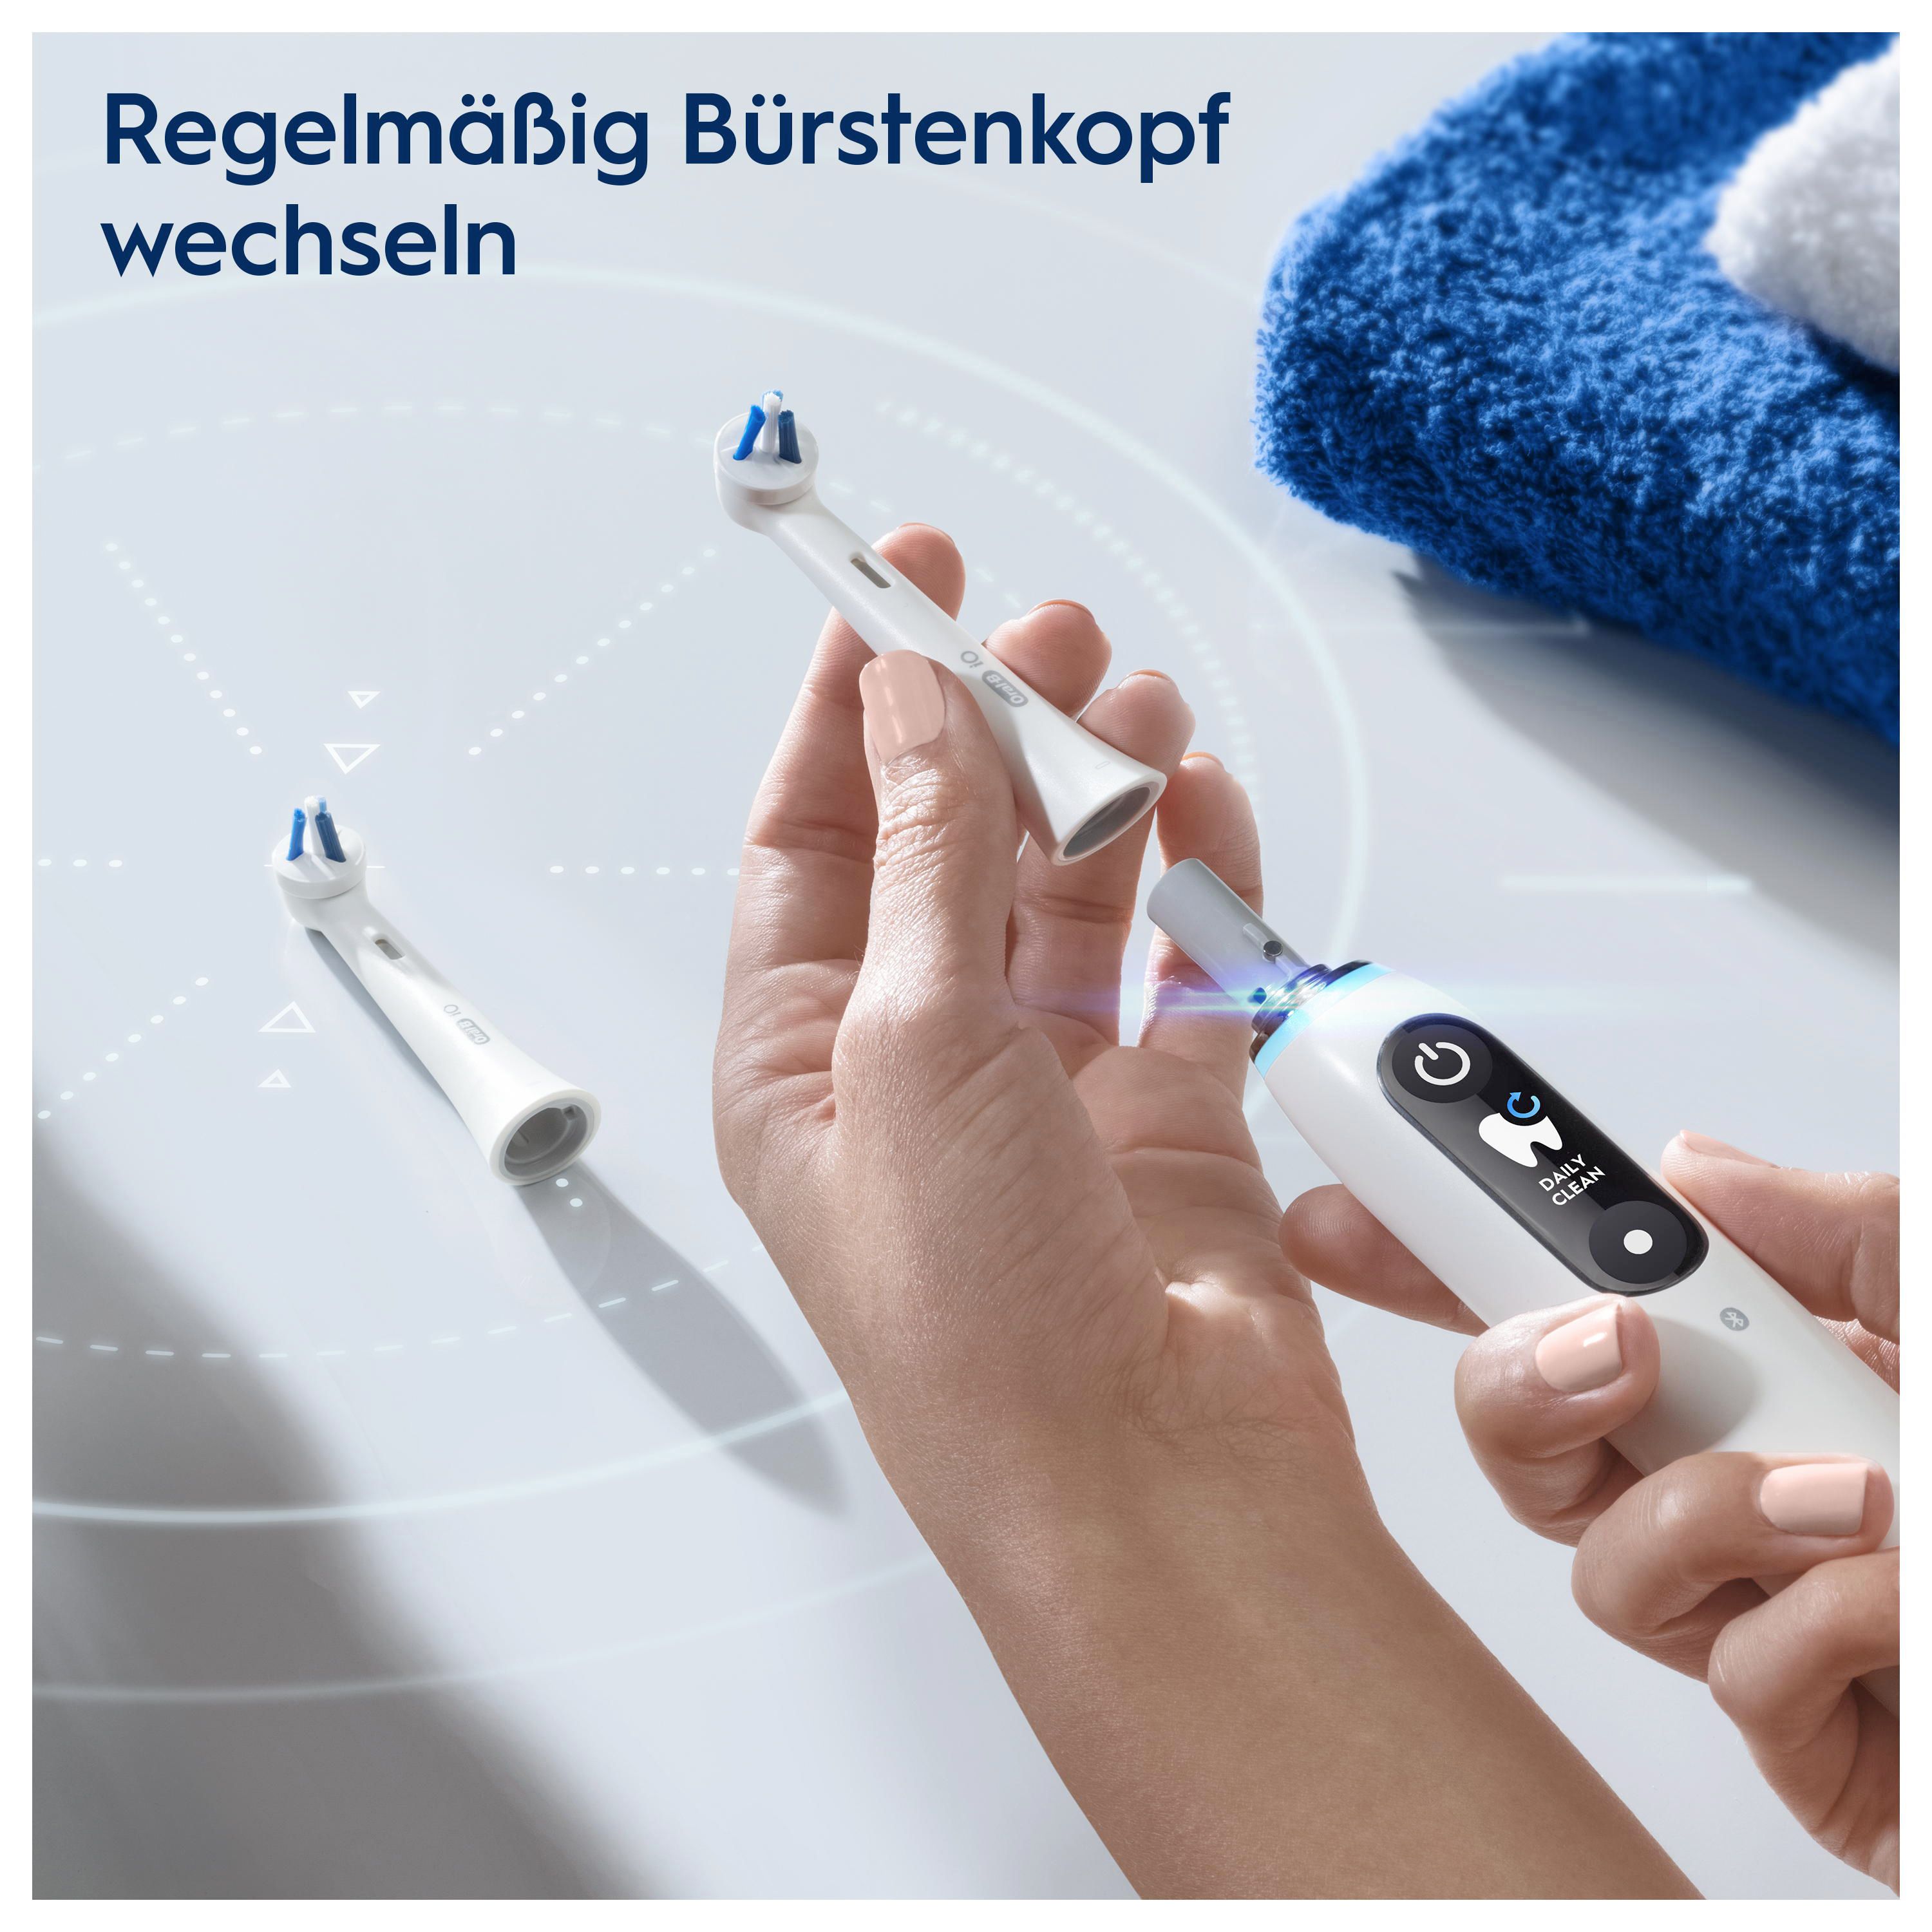 Oral-B - Aufsteckbürsten "Spezialisierte Reinigung - 2er Pack" in White